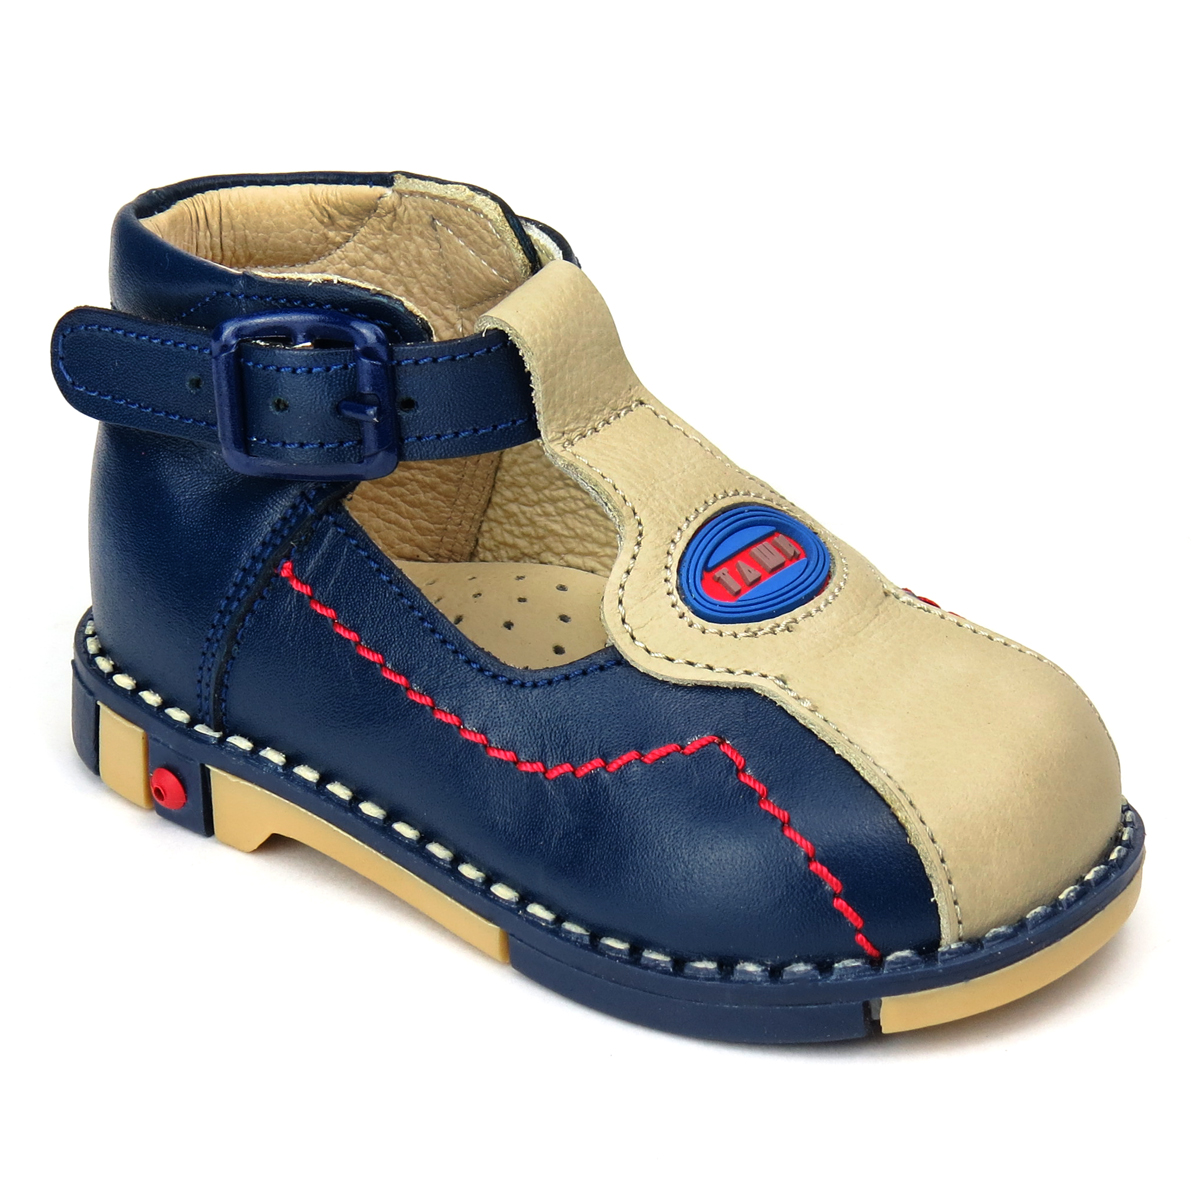 Туфли для мальчика Таши Орто, цвет: темно-синий, светло-бежевый. 219-01. Размер 21